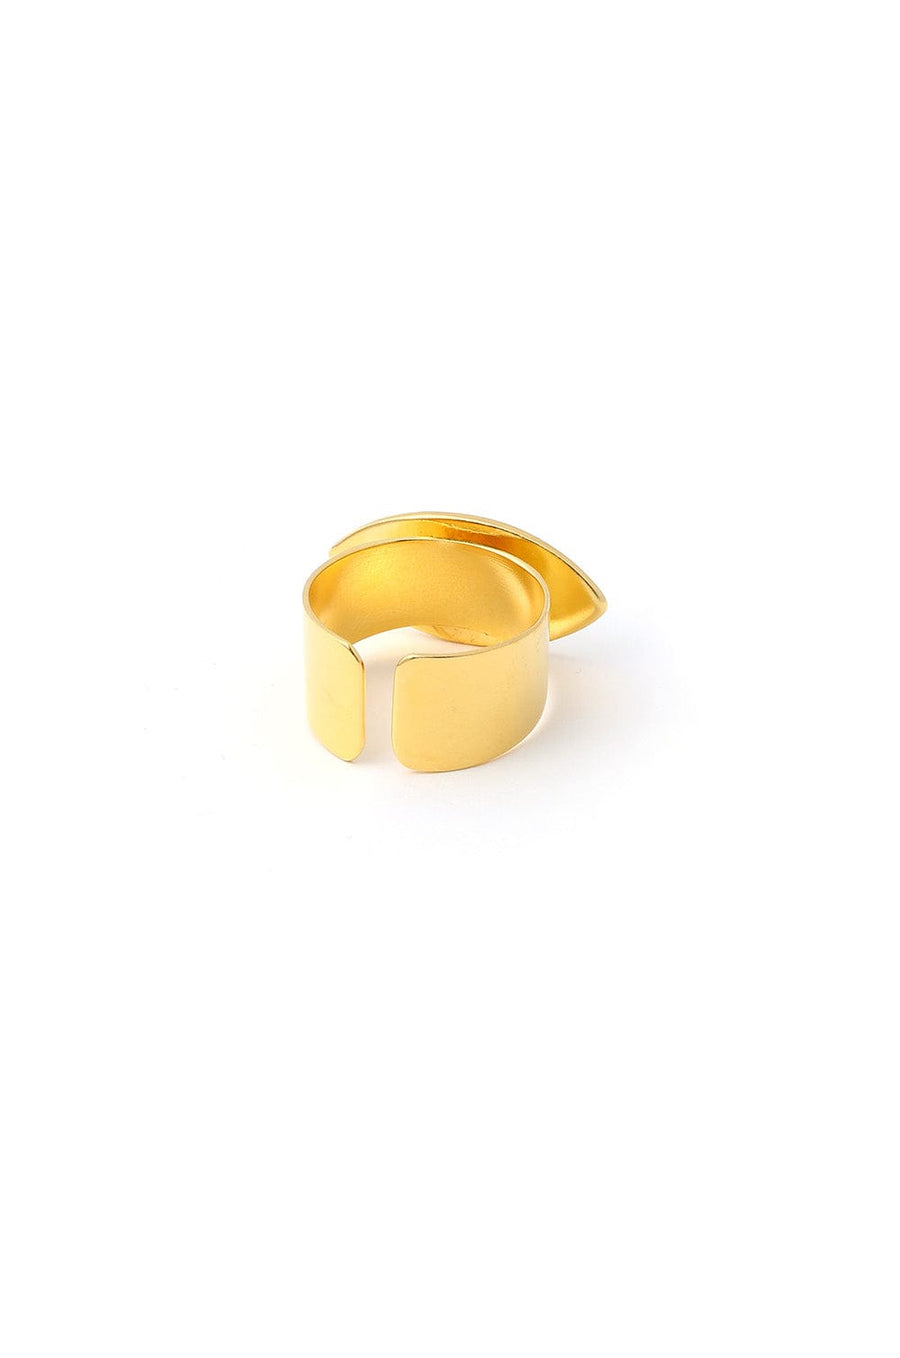 Gold Celestial White Enamel Astra Ring| Astley Clarke